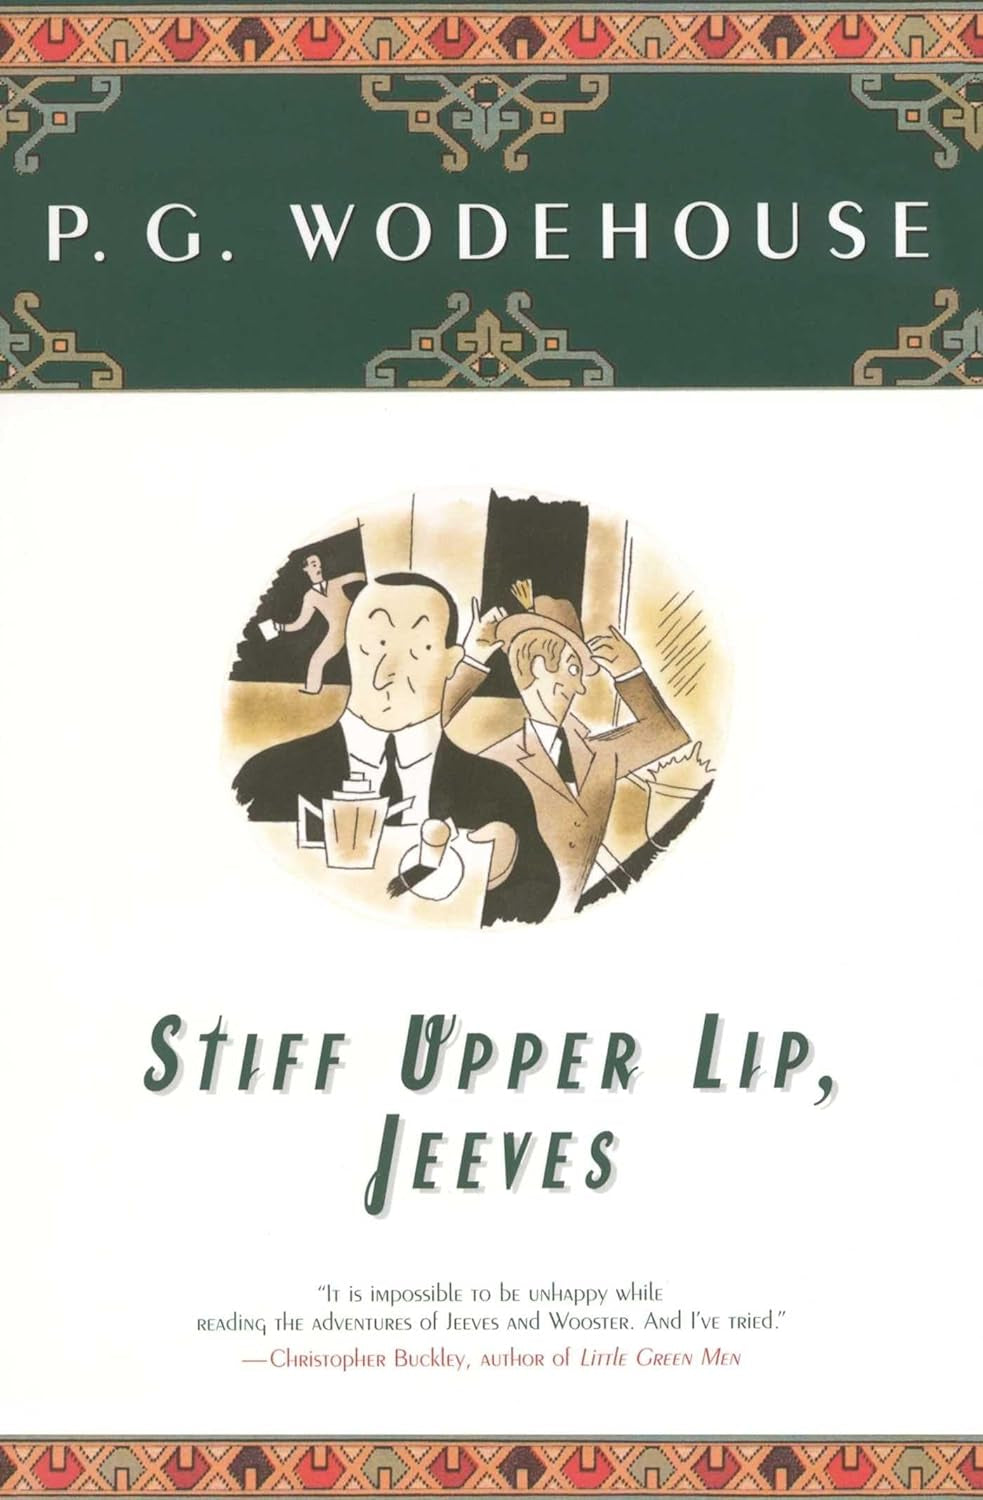 Stiff Upper Lip, Jeeves